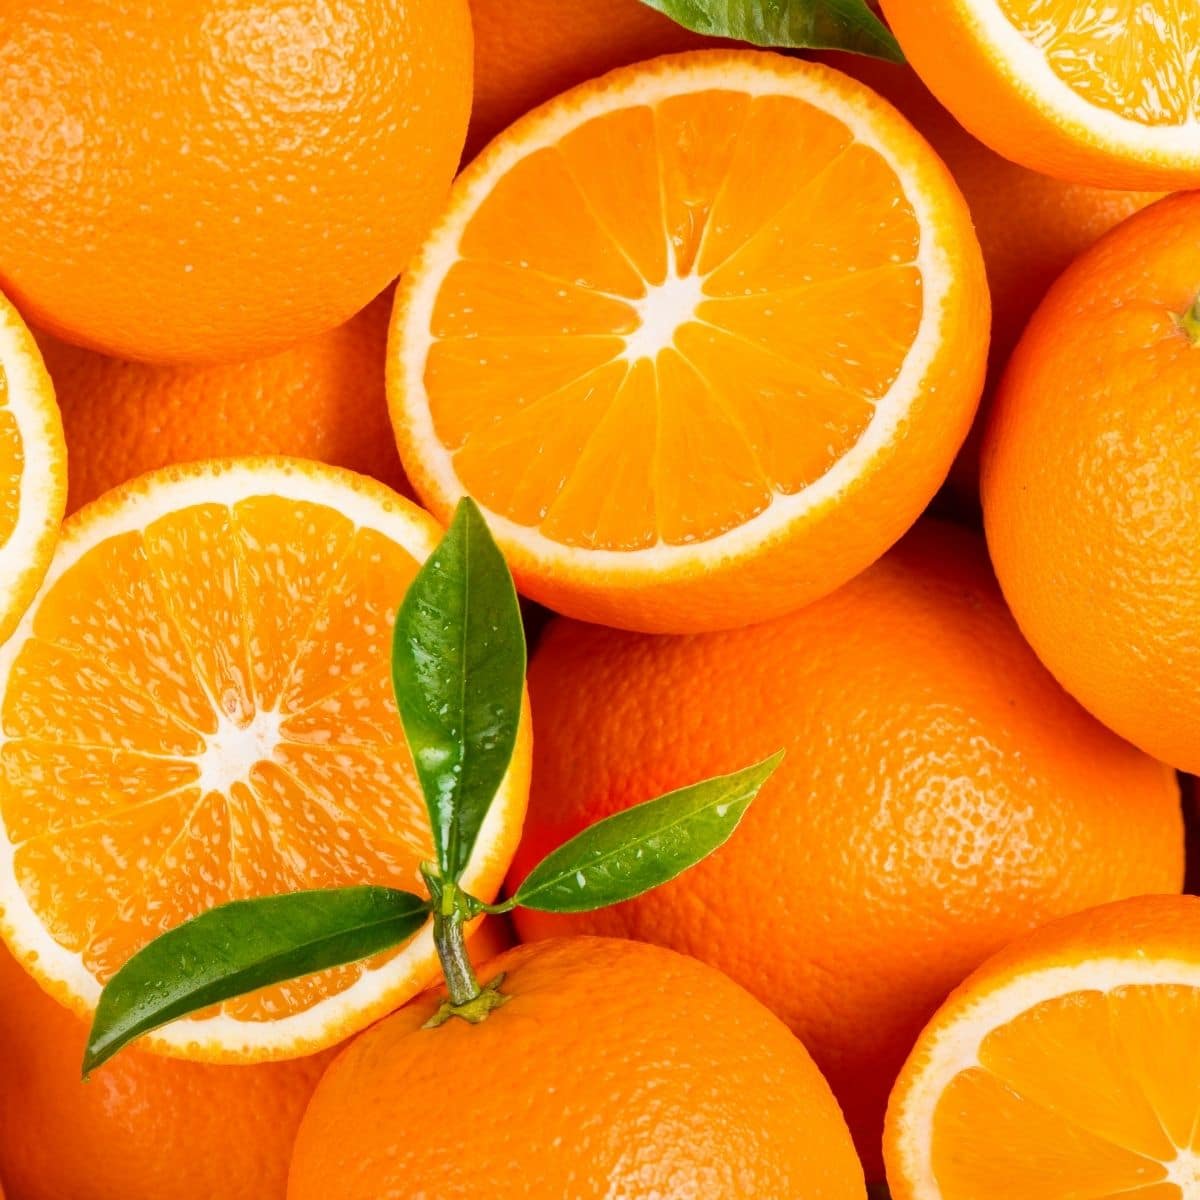 Square image of oranges.